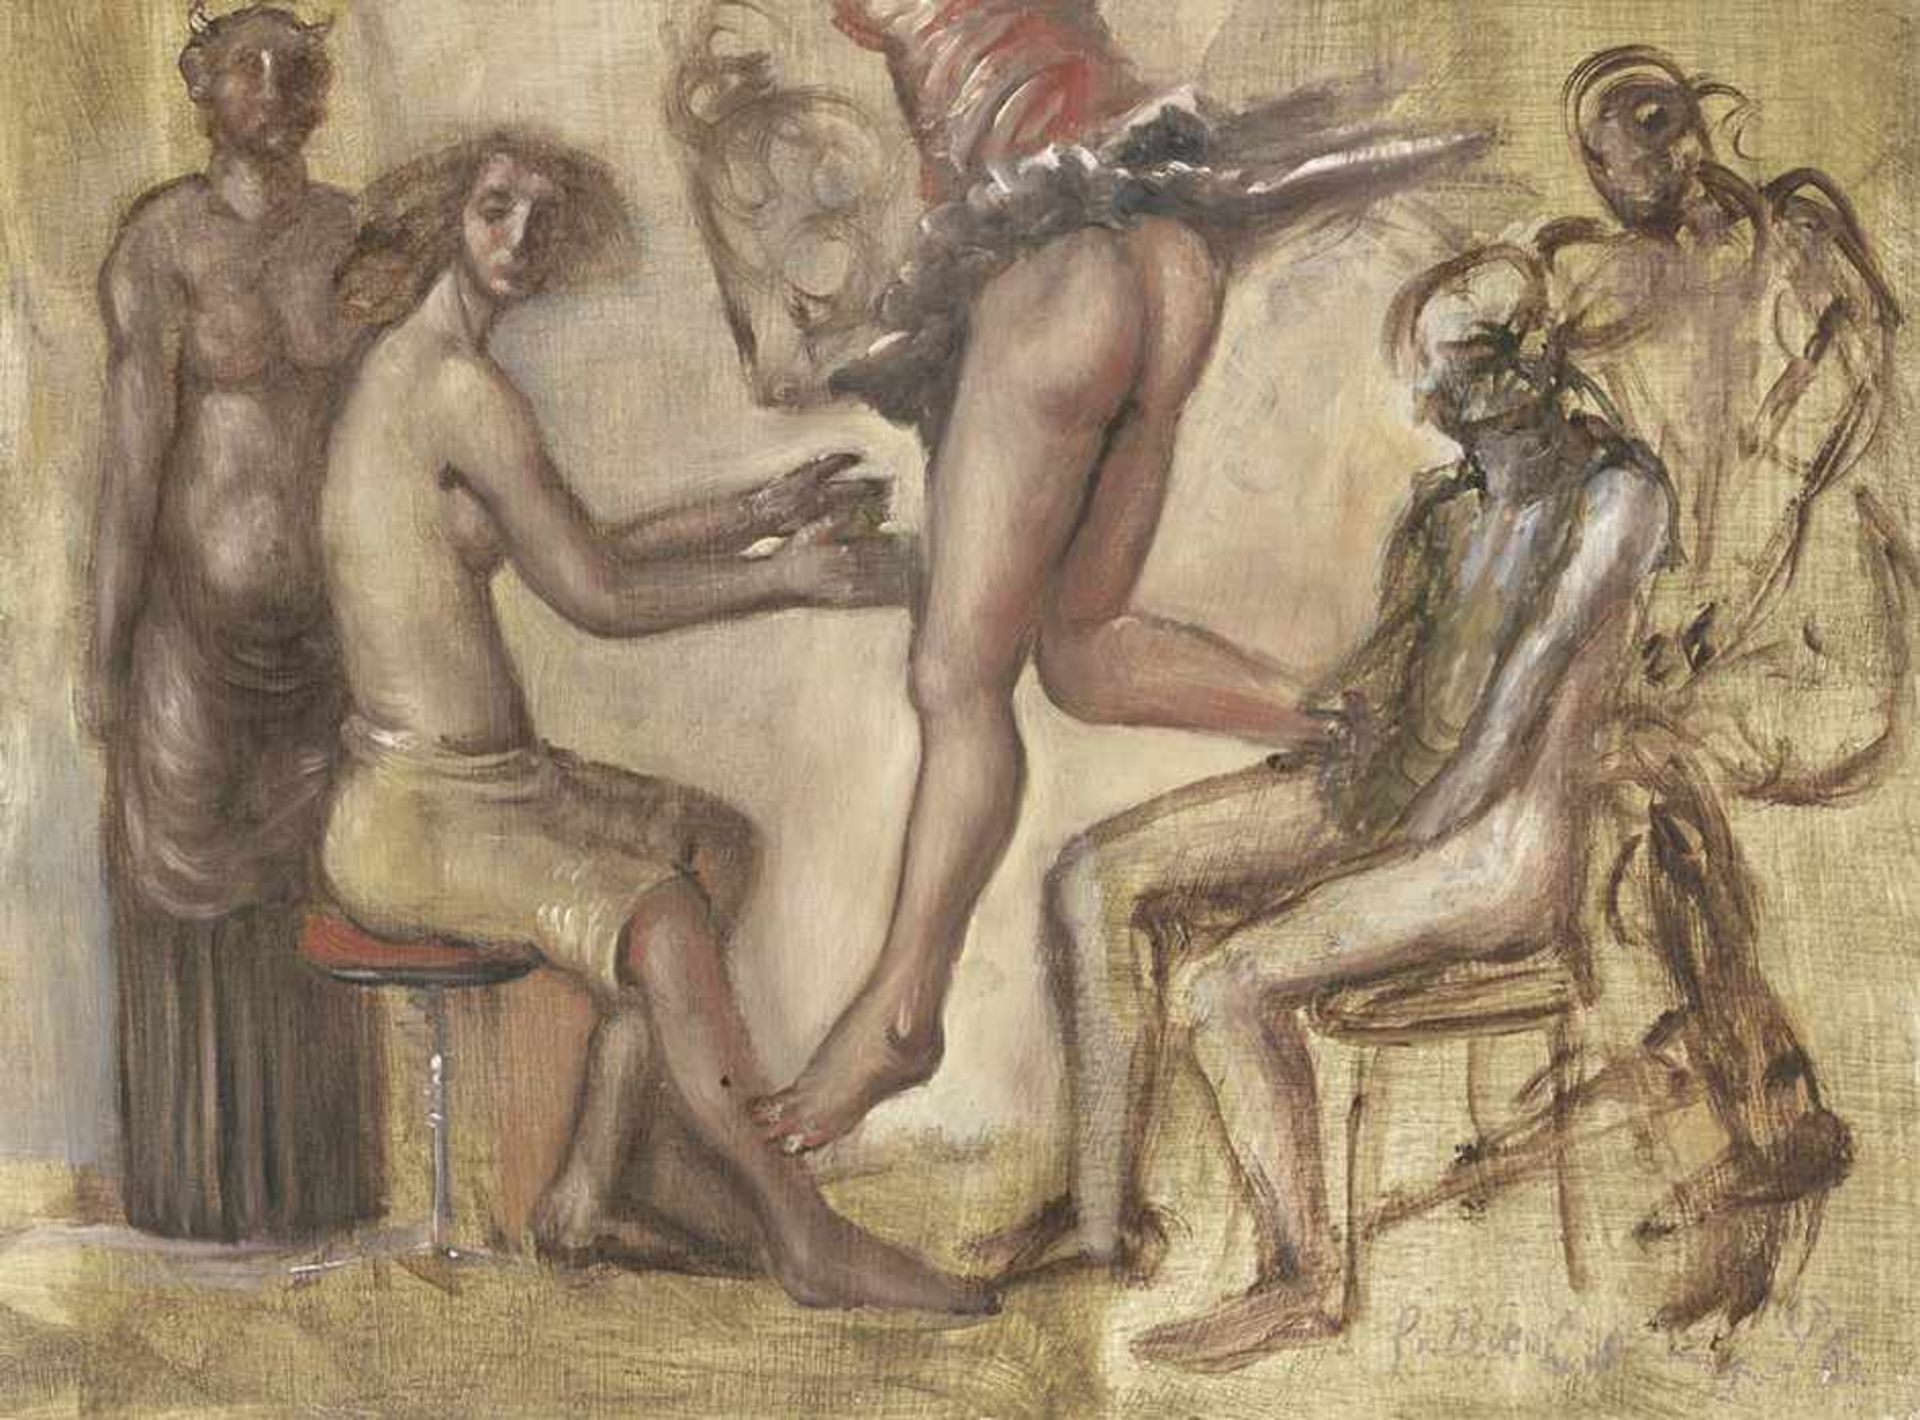 Breitling, Gisela: Mythologische SzeneMythologische SzeneÖl auf Holz. 1996.21 x 28,3 cm.Unten rechts